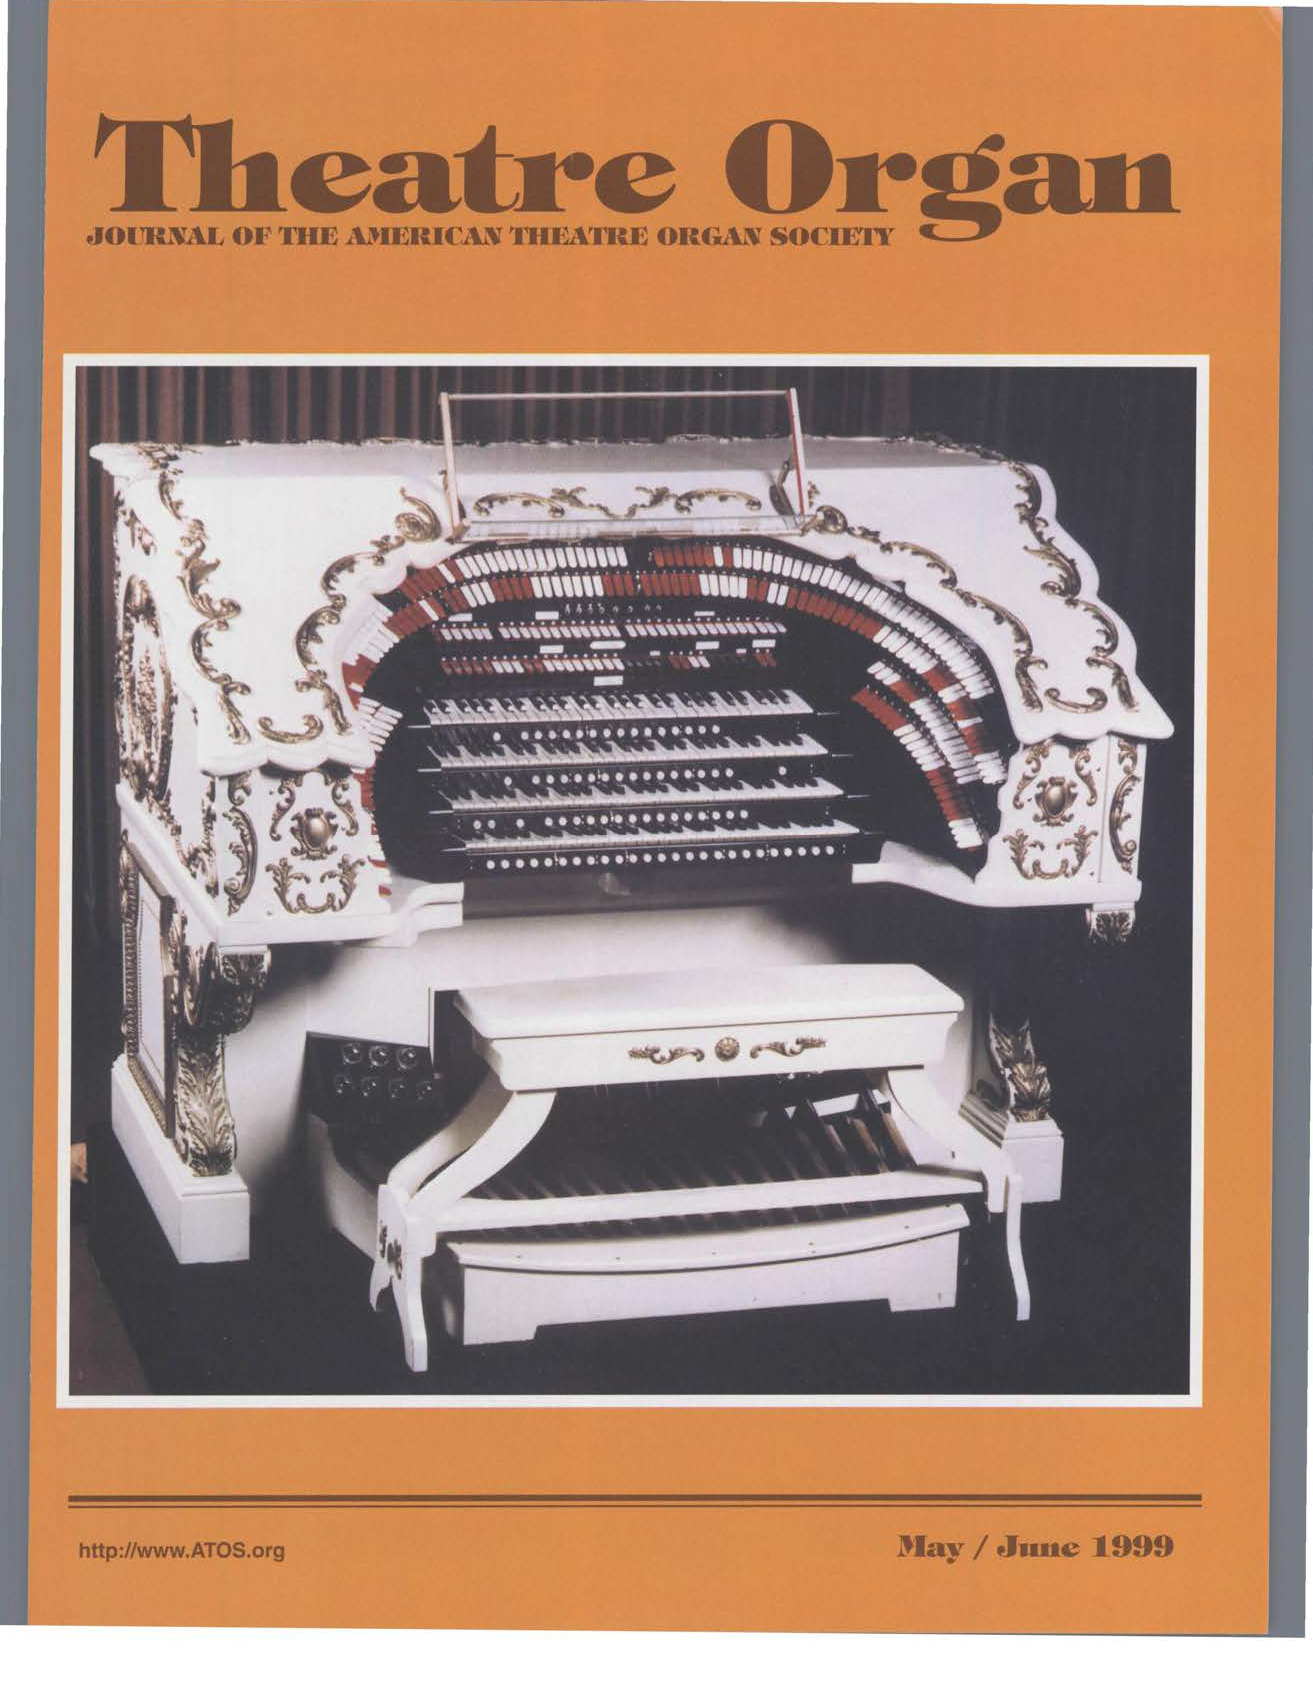 Theatre Organ, May - June 1999, Volume 41, Number 3